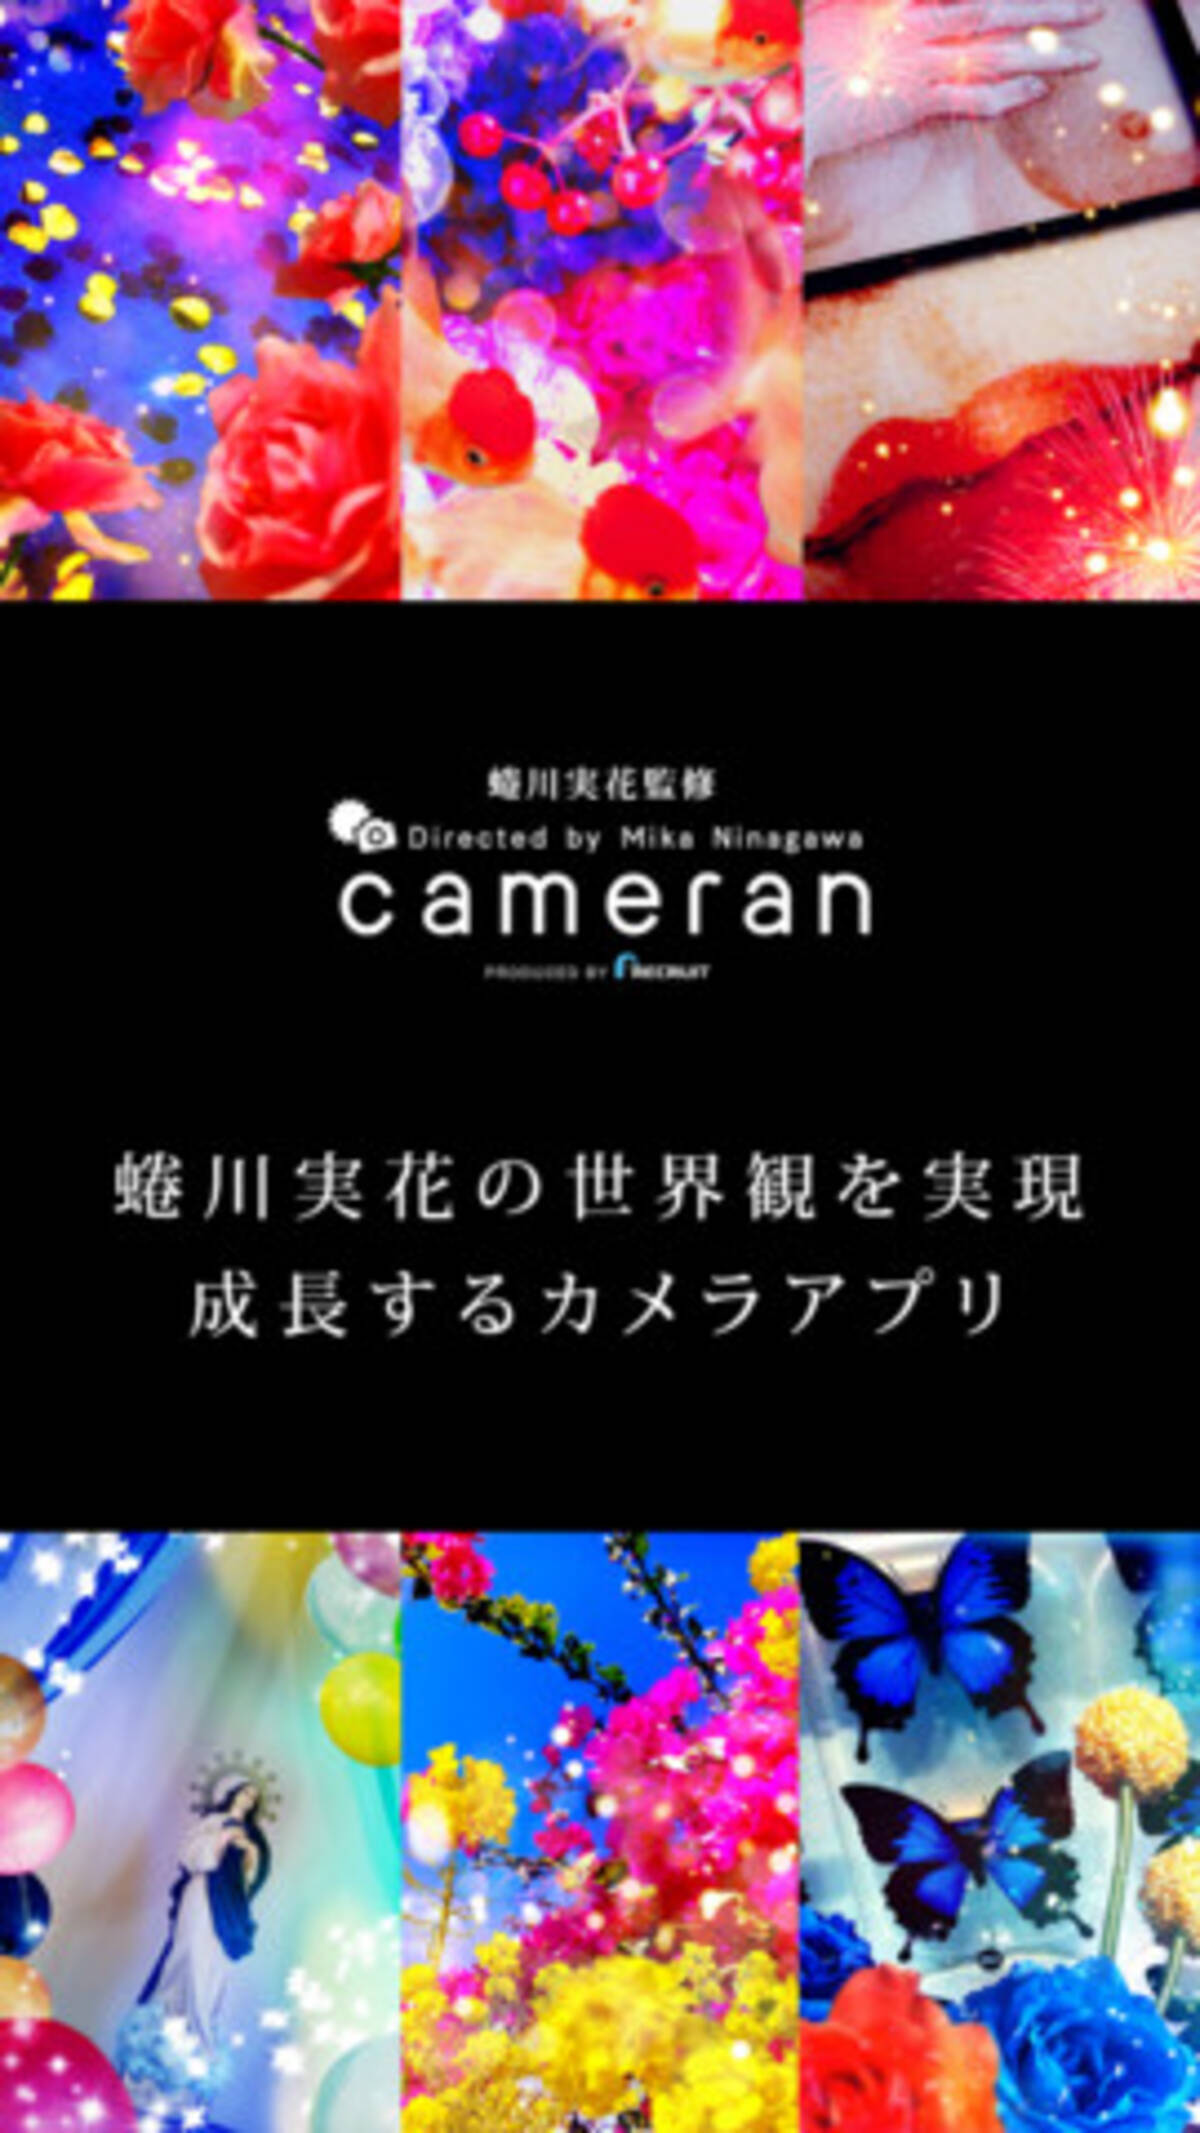 蜷川実花の極彩色を誰でも簡単に表現 Iphone向けカメラアプリ